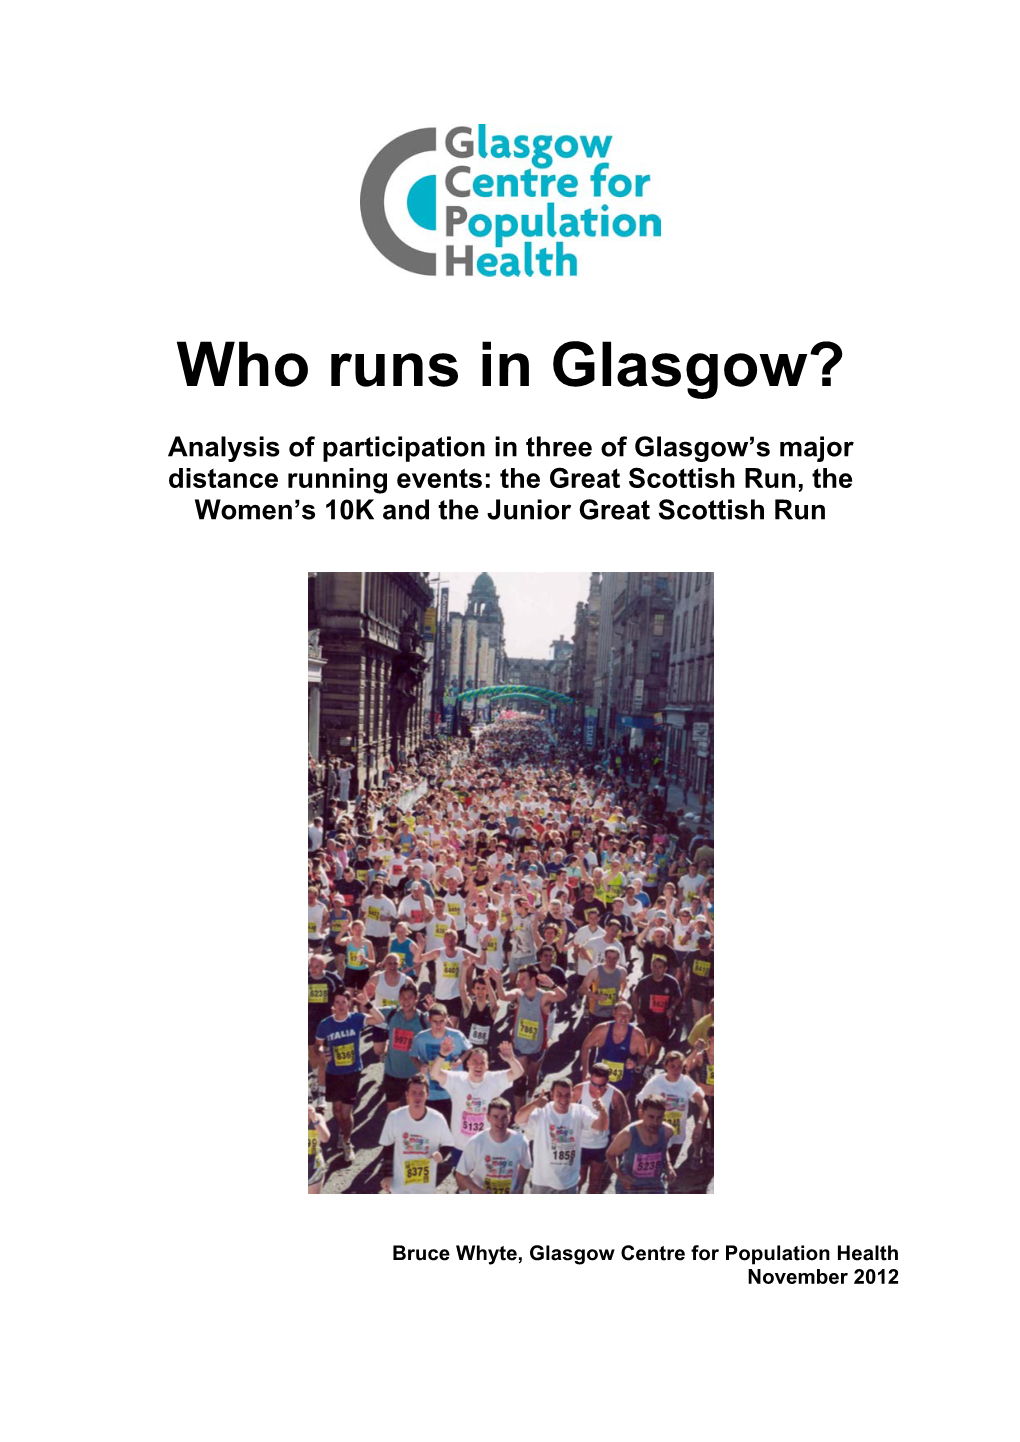 The Great Scottish Run, the Women's 10K and Junior